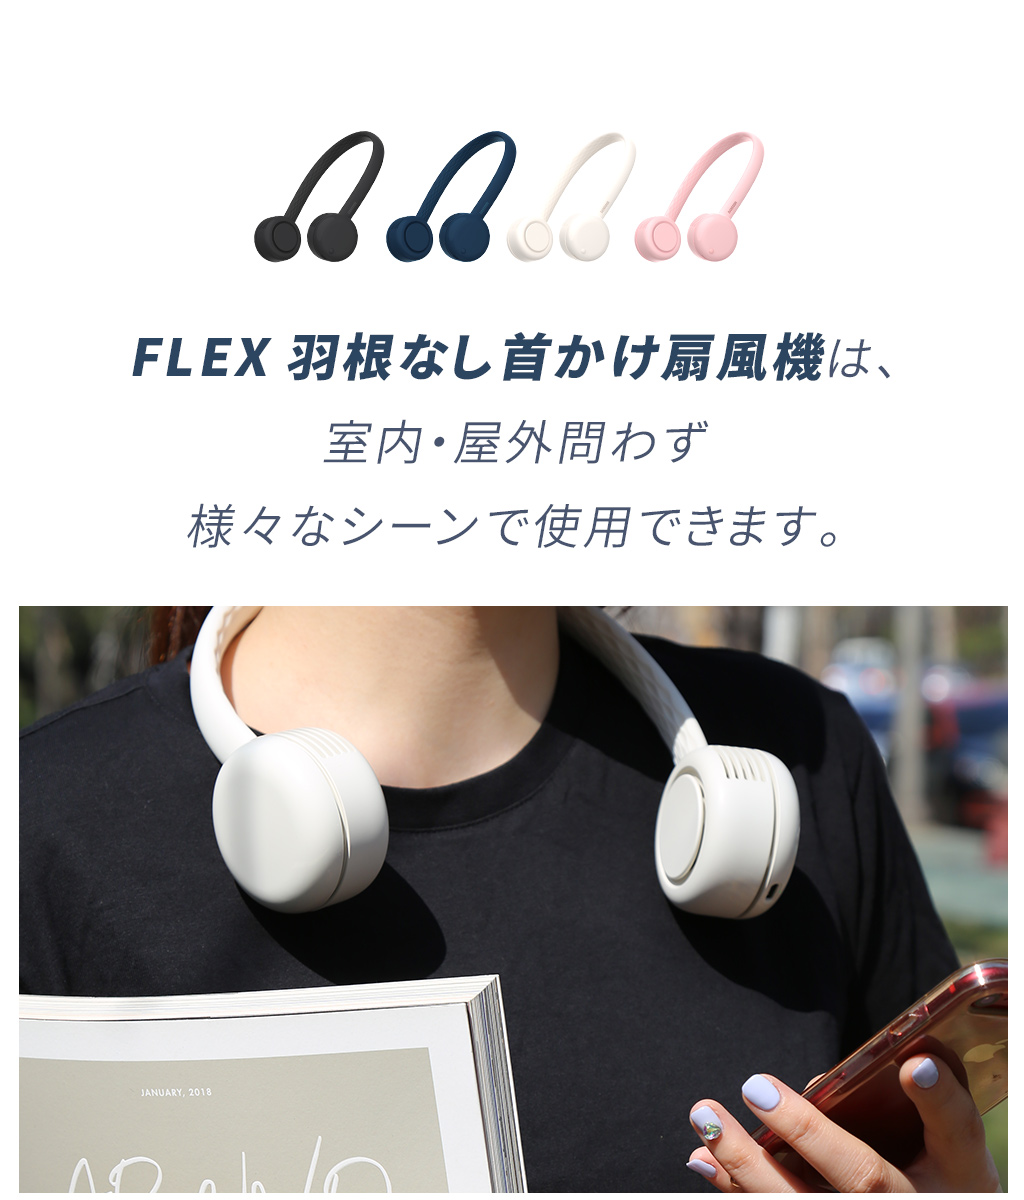 FLEX、室内・屋外問わず様々なシーンで使用OK